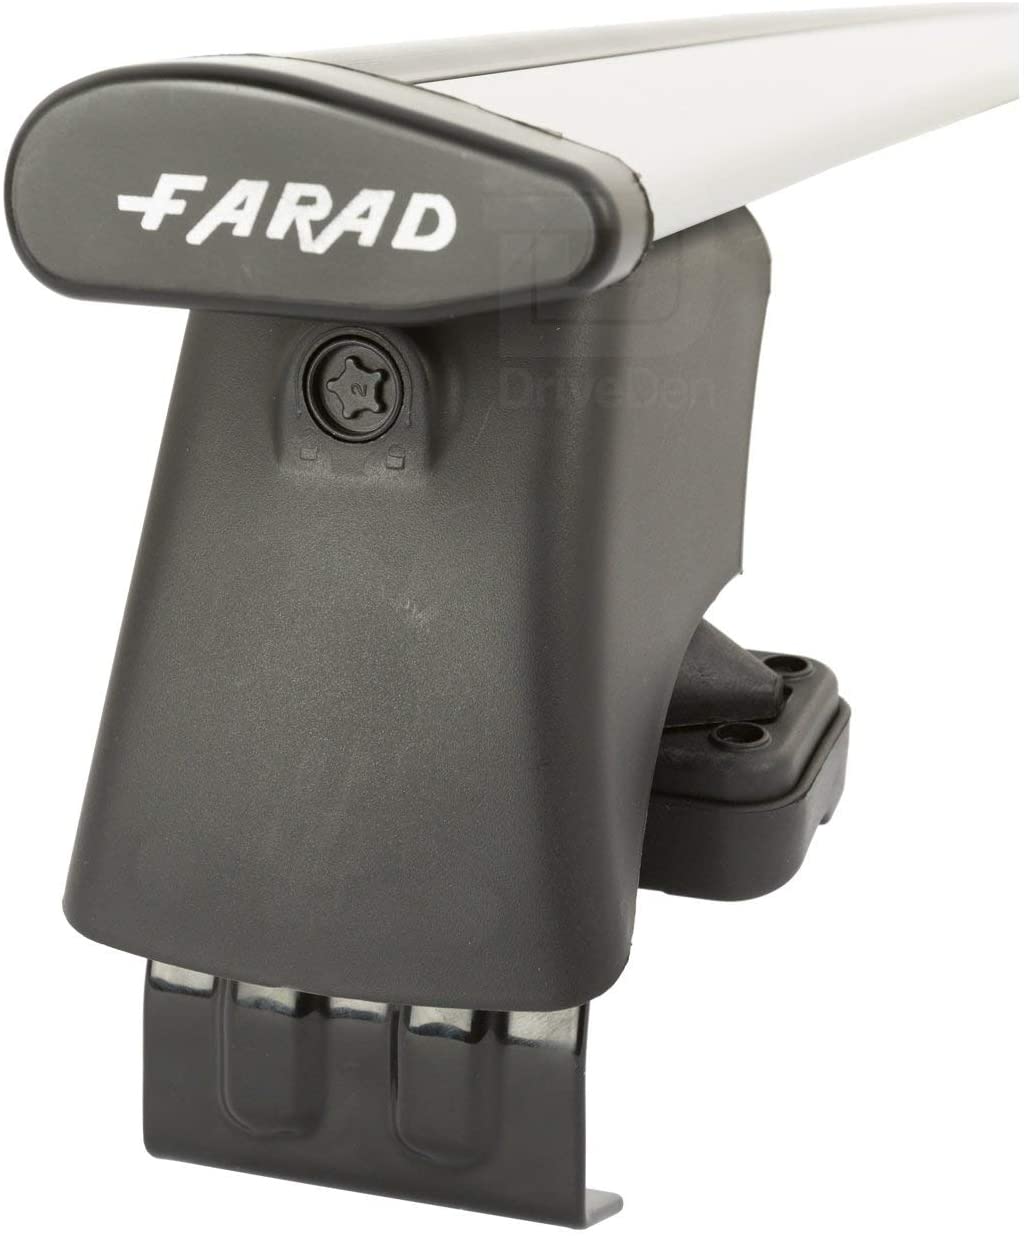 FARAD-Kit H2 per barre portatutto - Honda Civic 2012-2017 (senza corrimano)